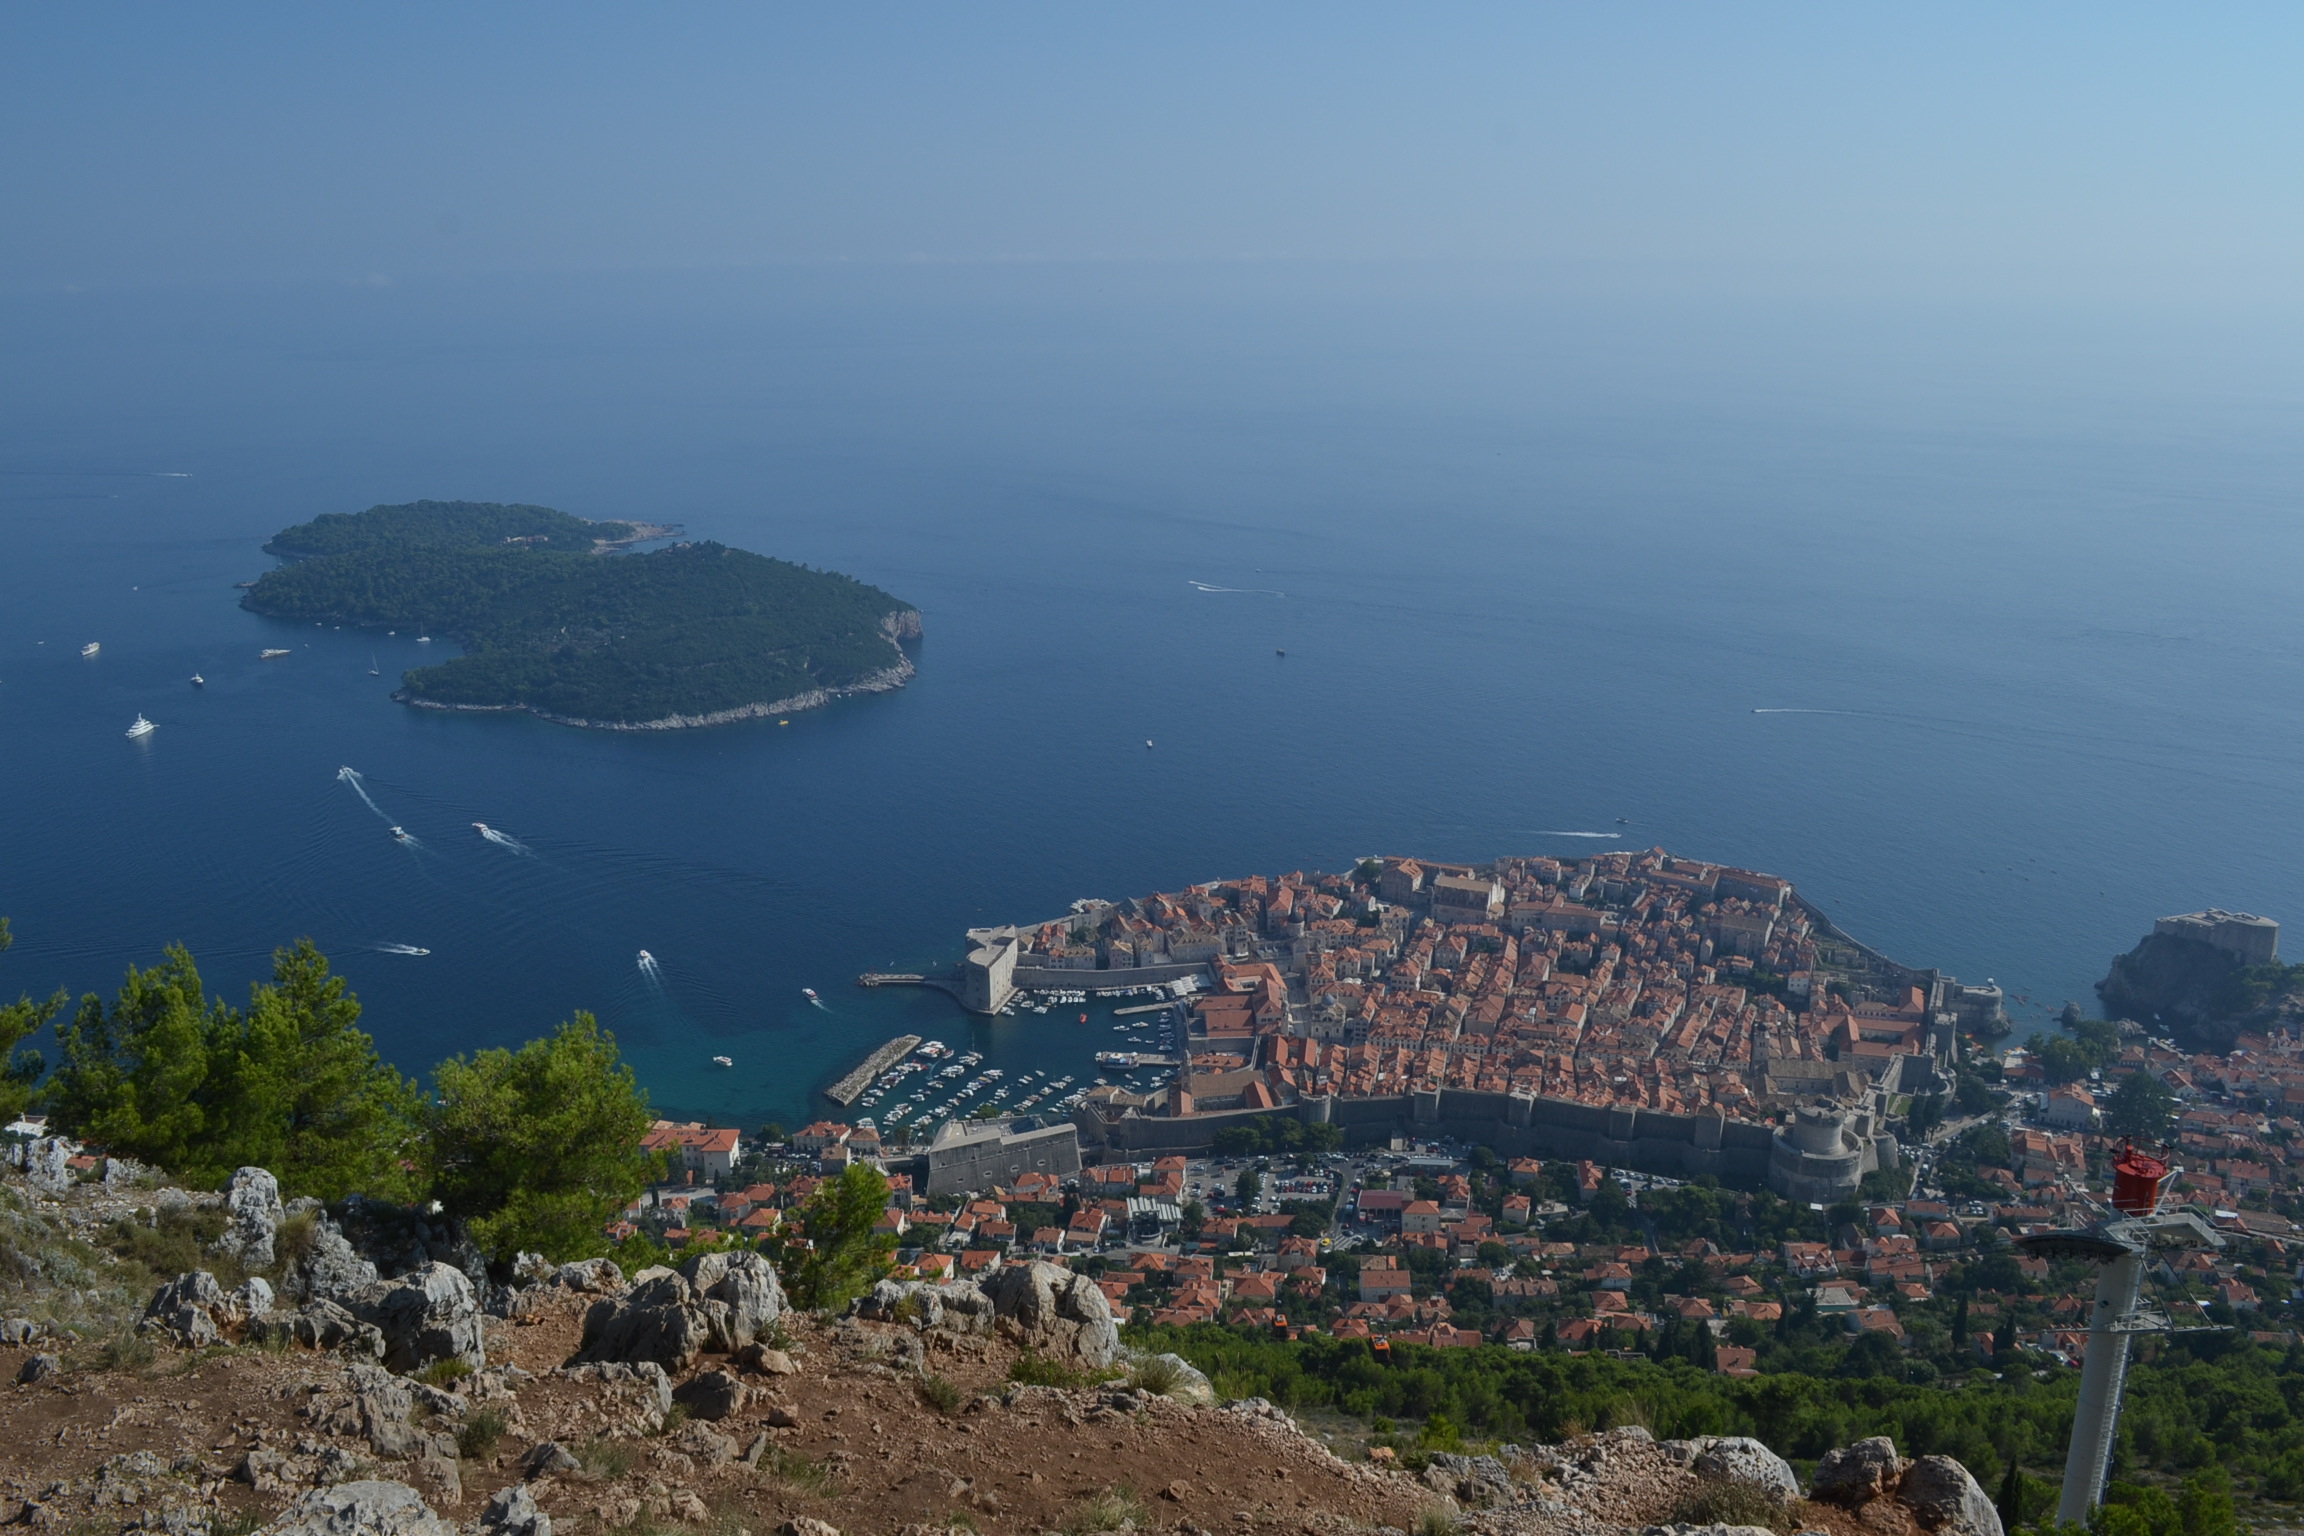 【ザ・観光地】クロアチア・ドブロブニクの物価は西欧並？実際に見て回った感想をまとめておきます